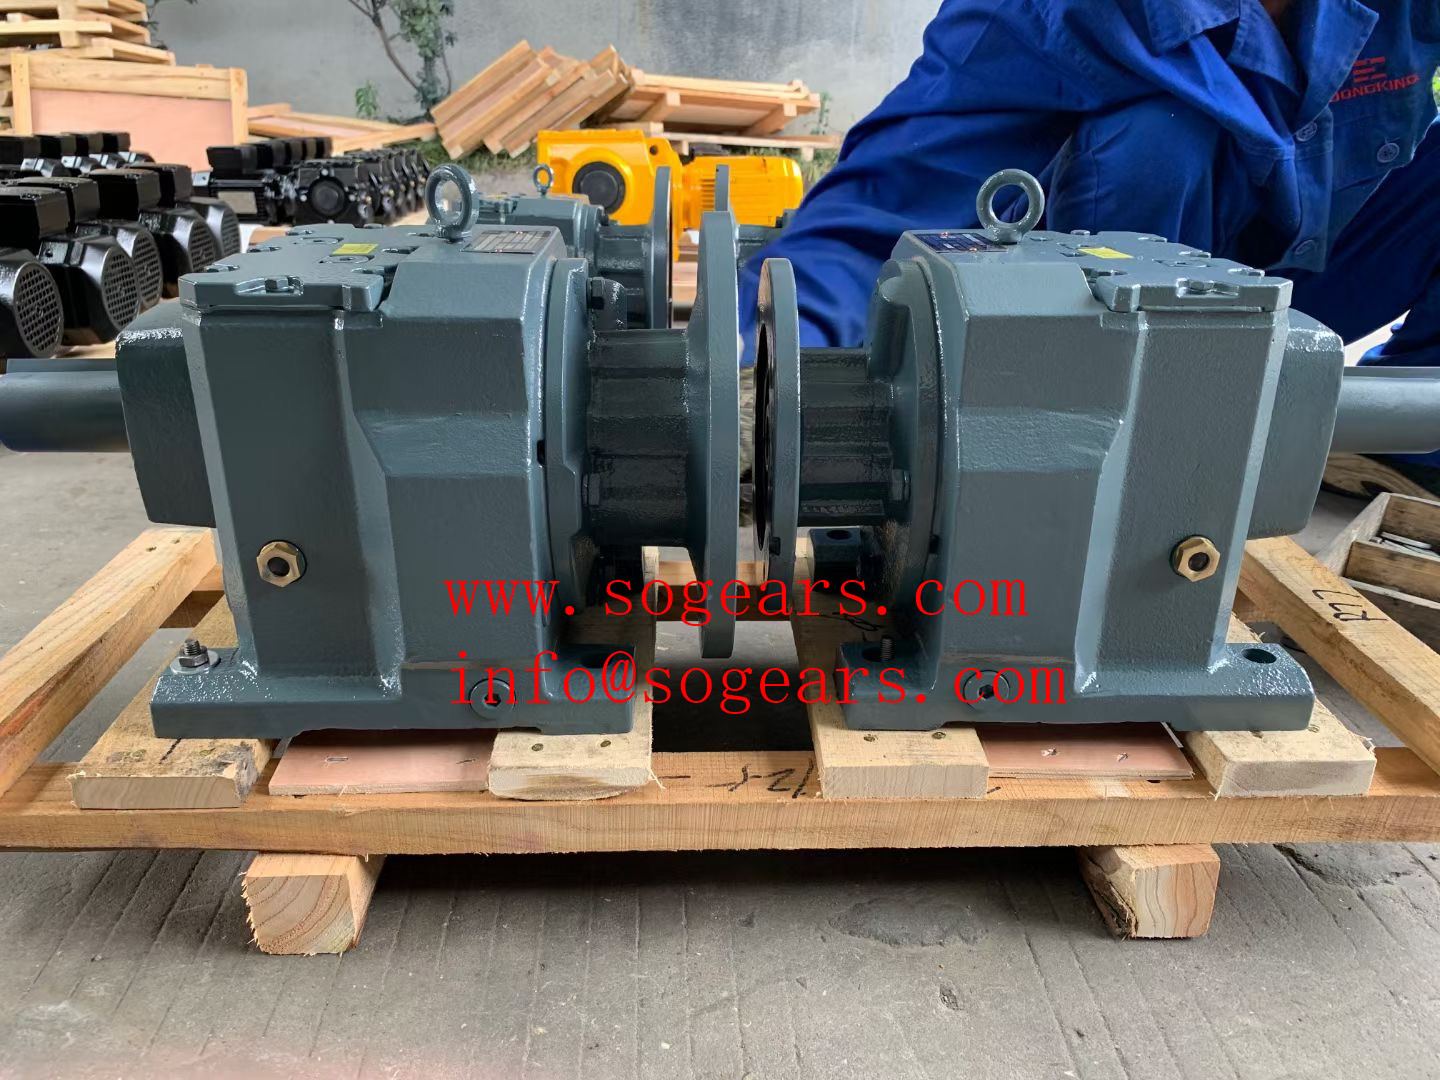 Växelmotor 1 8 hk 220 rpm elmotorleverantör i Kina